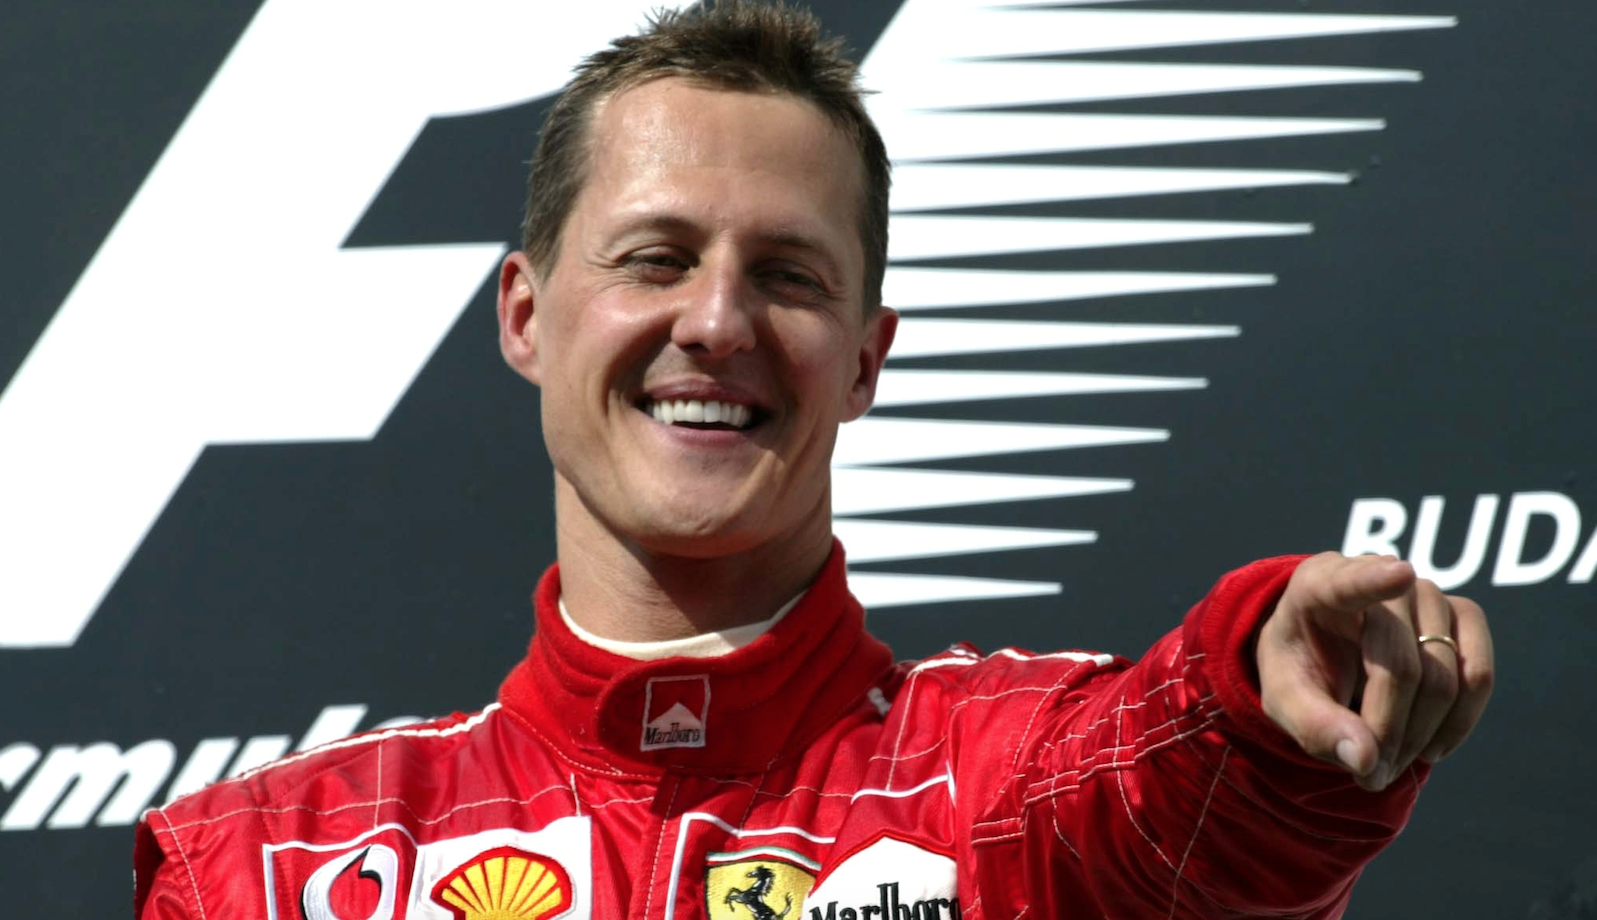 Subastan por 13 mde el Ferrari F1 de Michael Schumacher del 2003